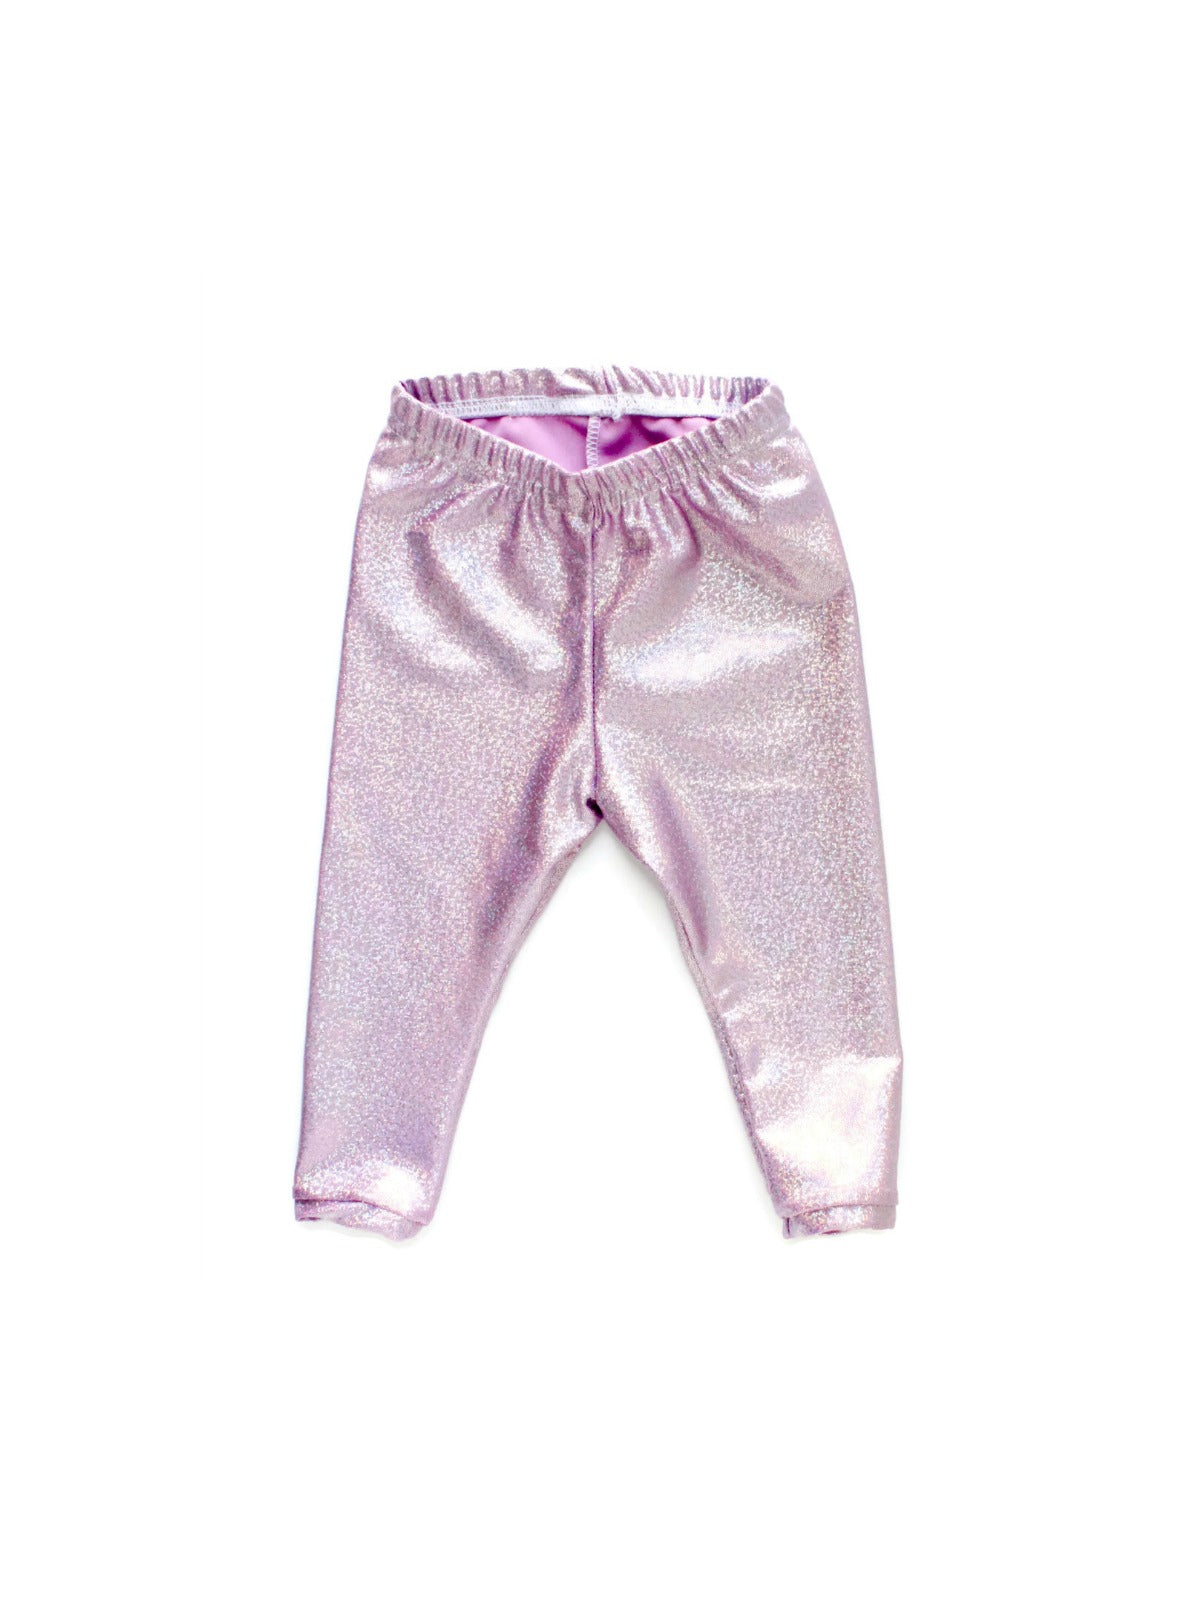 light pink metallic shimmer unicorn girl leggings